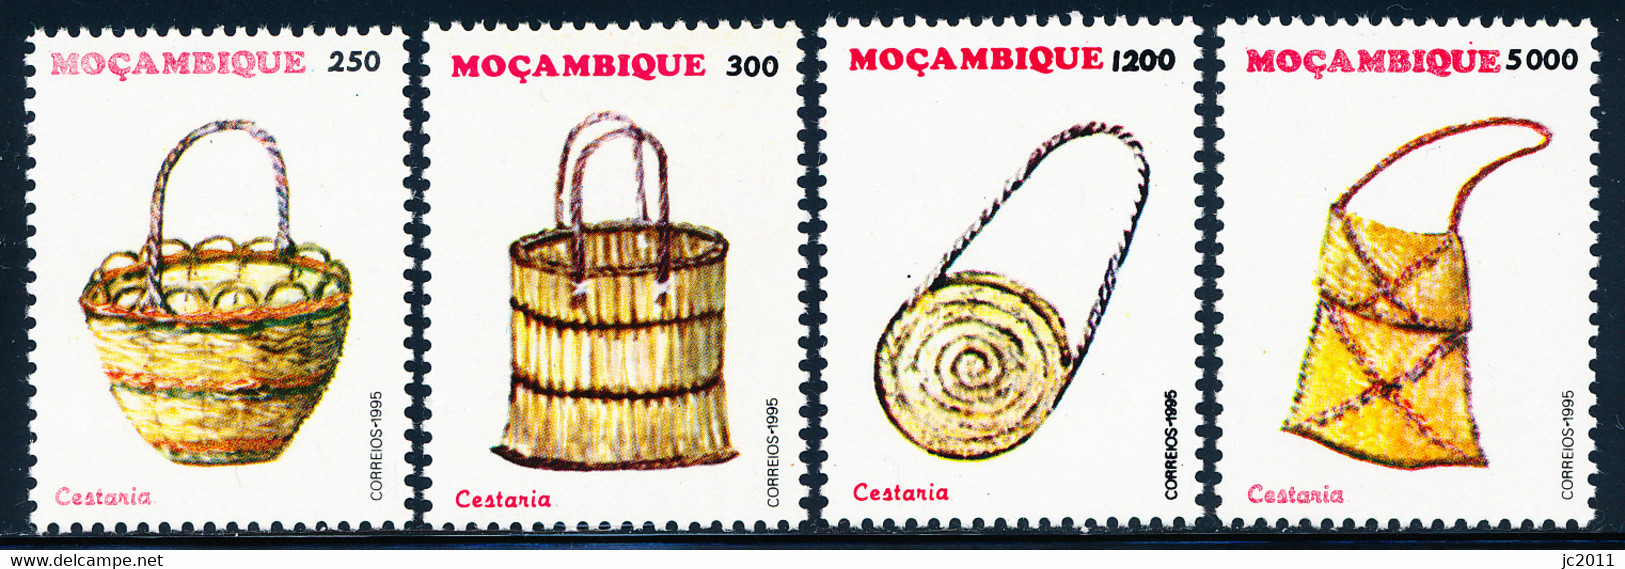 Mozambique - 1995 - Basketry - MNH - Mosambik